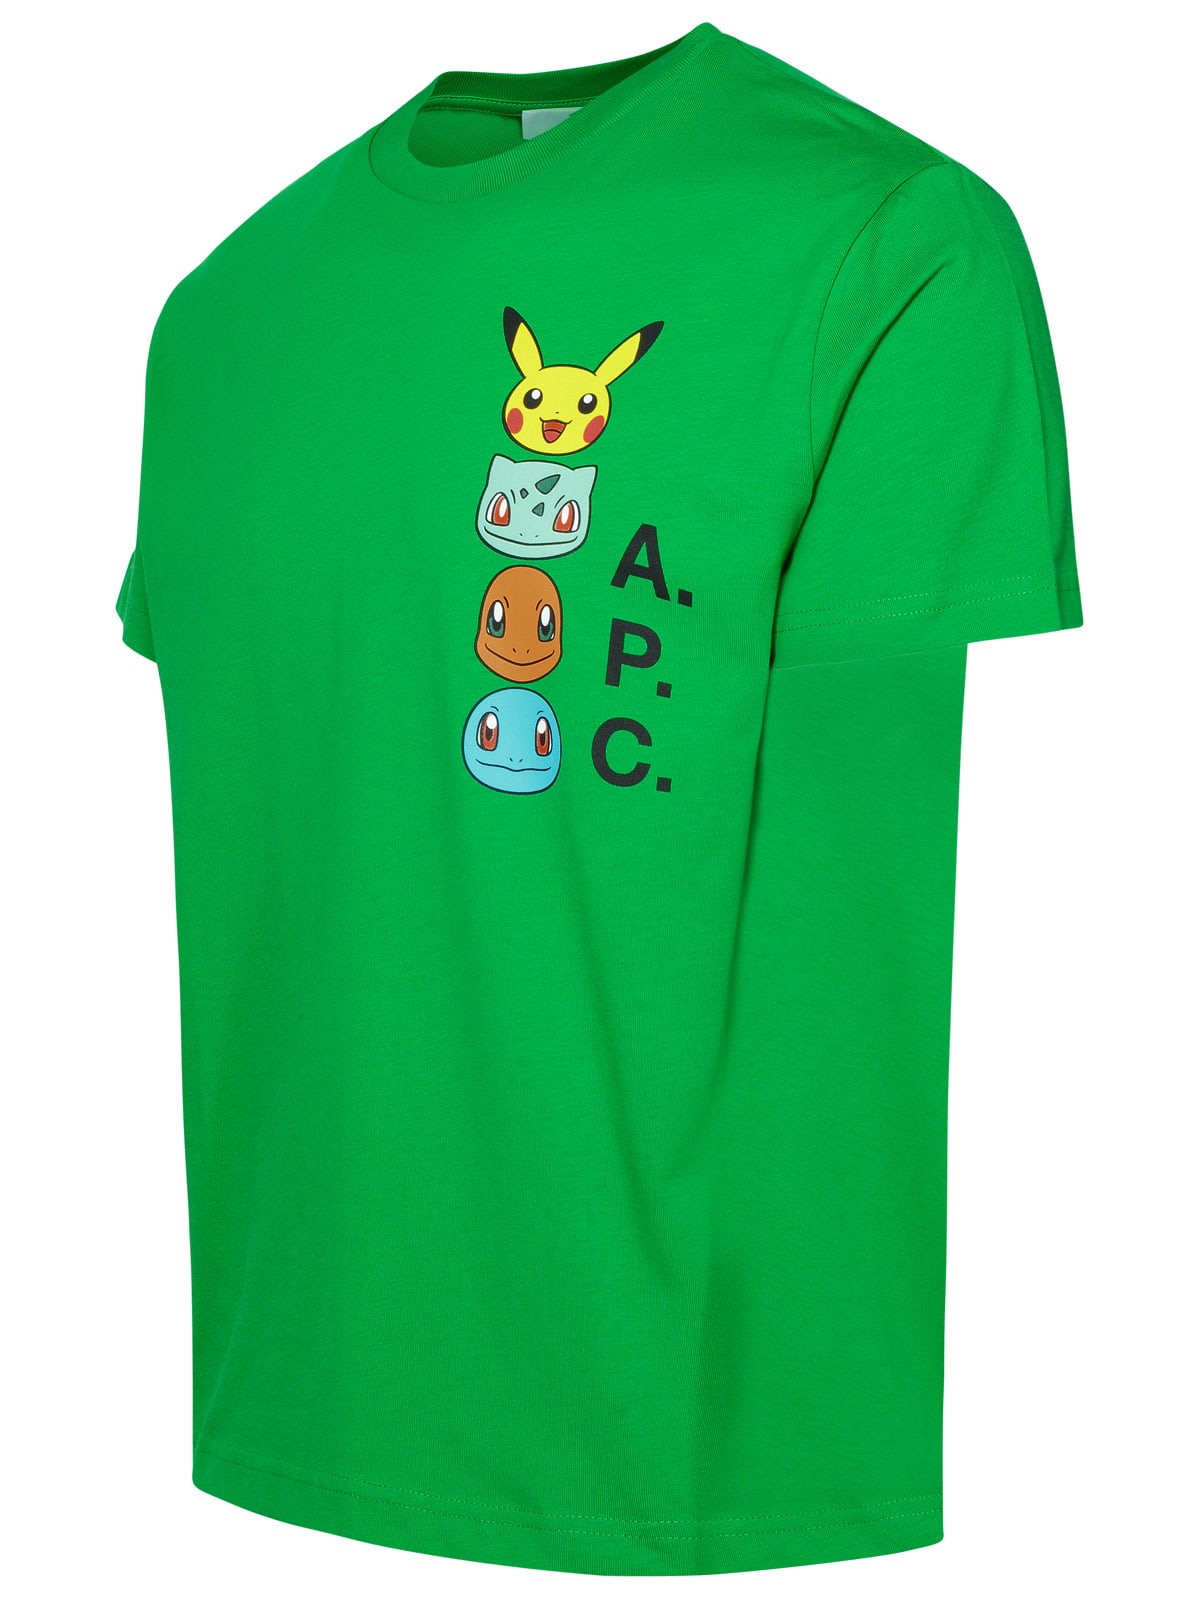 Shop Apc Pokémon The Portrait Green Cotton T-shirt